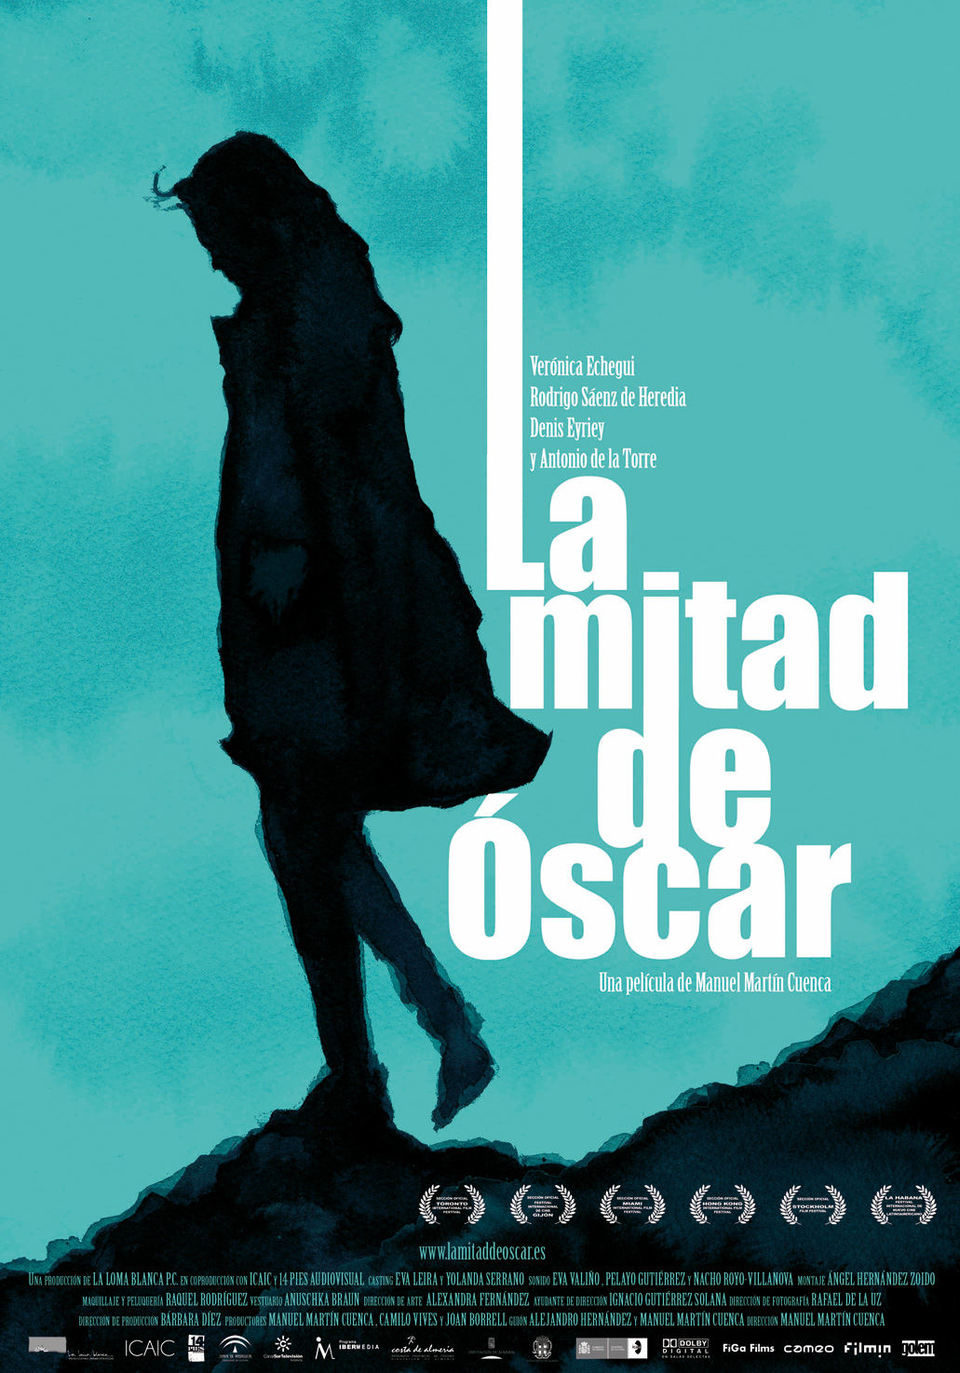 Poster of Half of Oscar - España